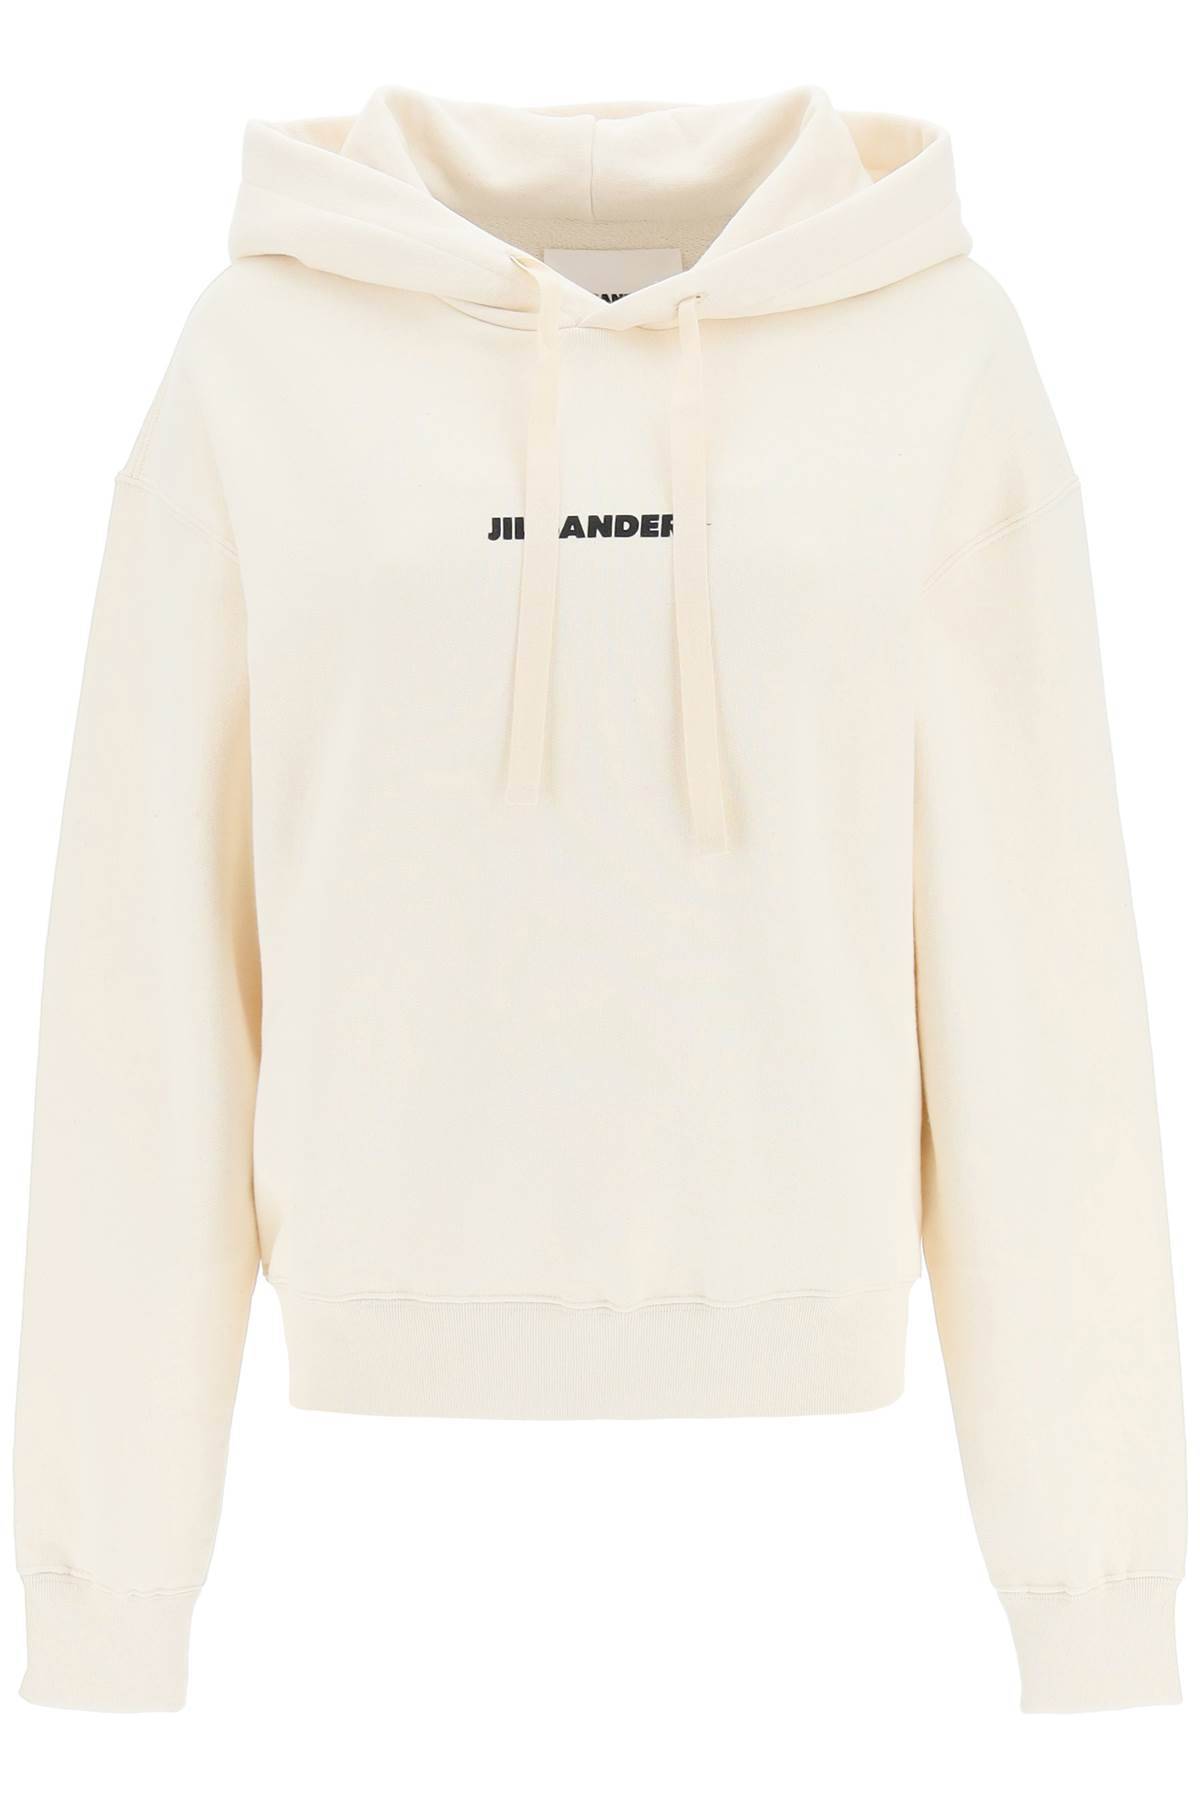 Jil Sander JIL SANDER logo print hoodie